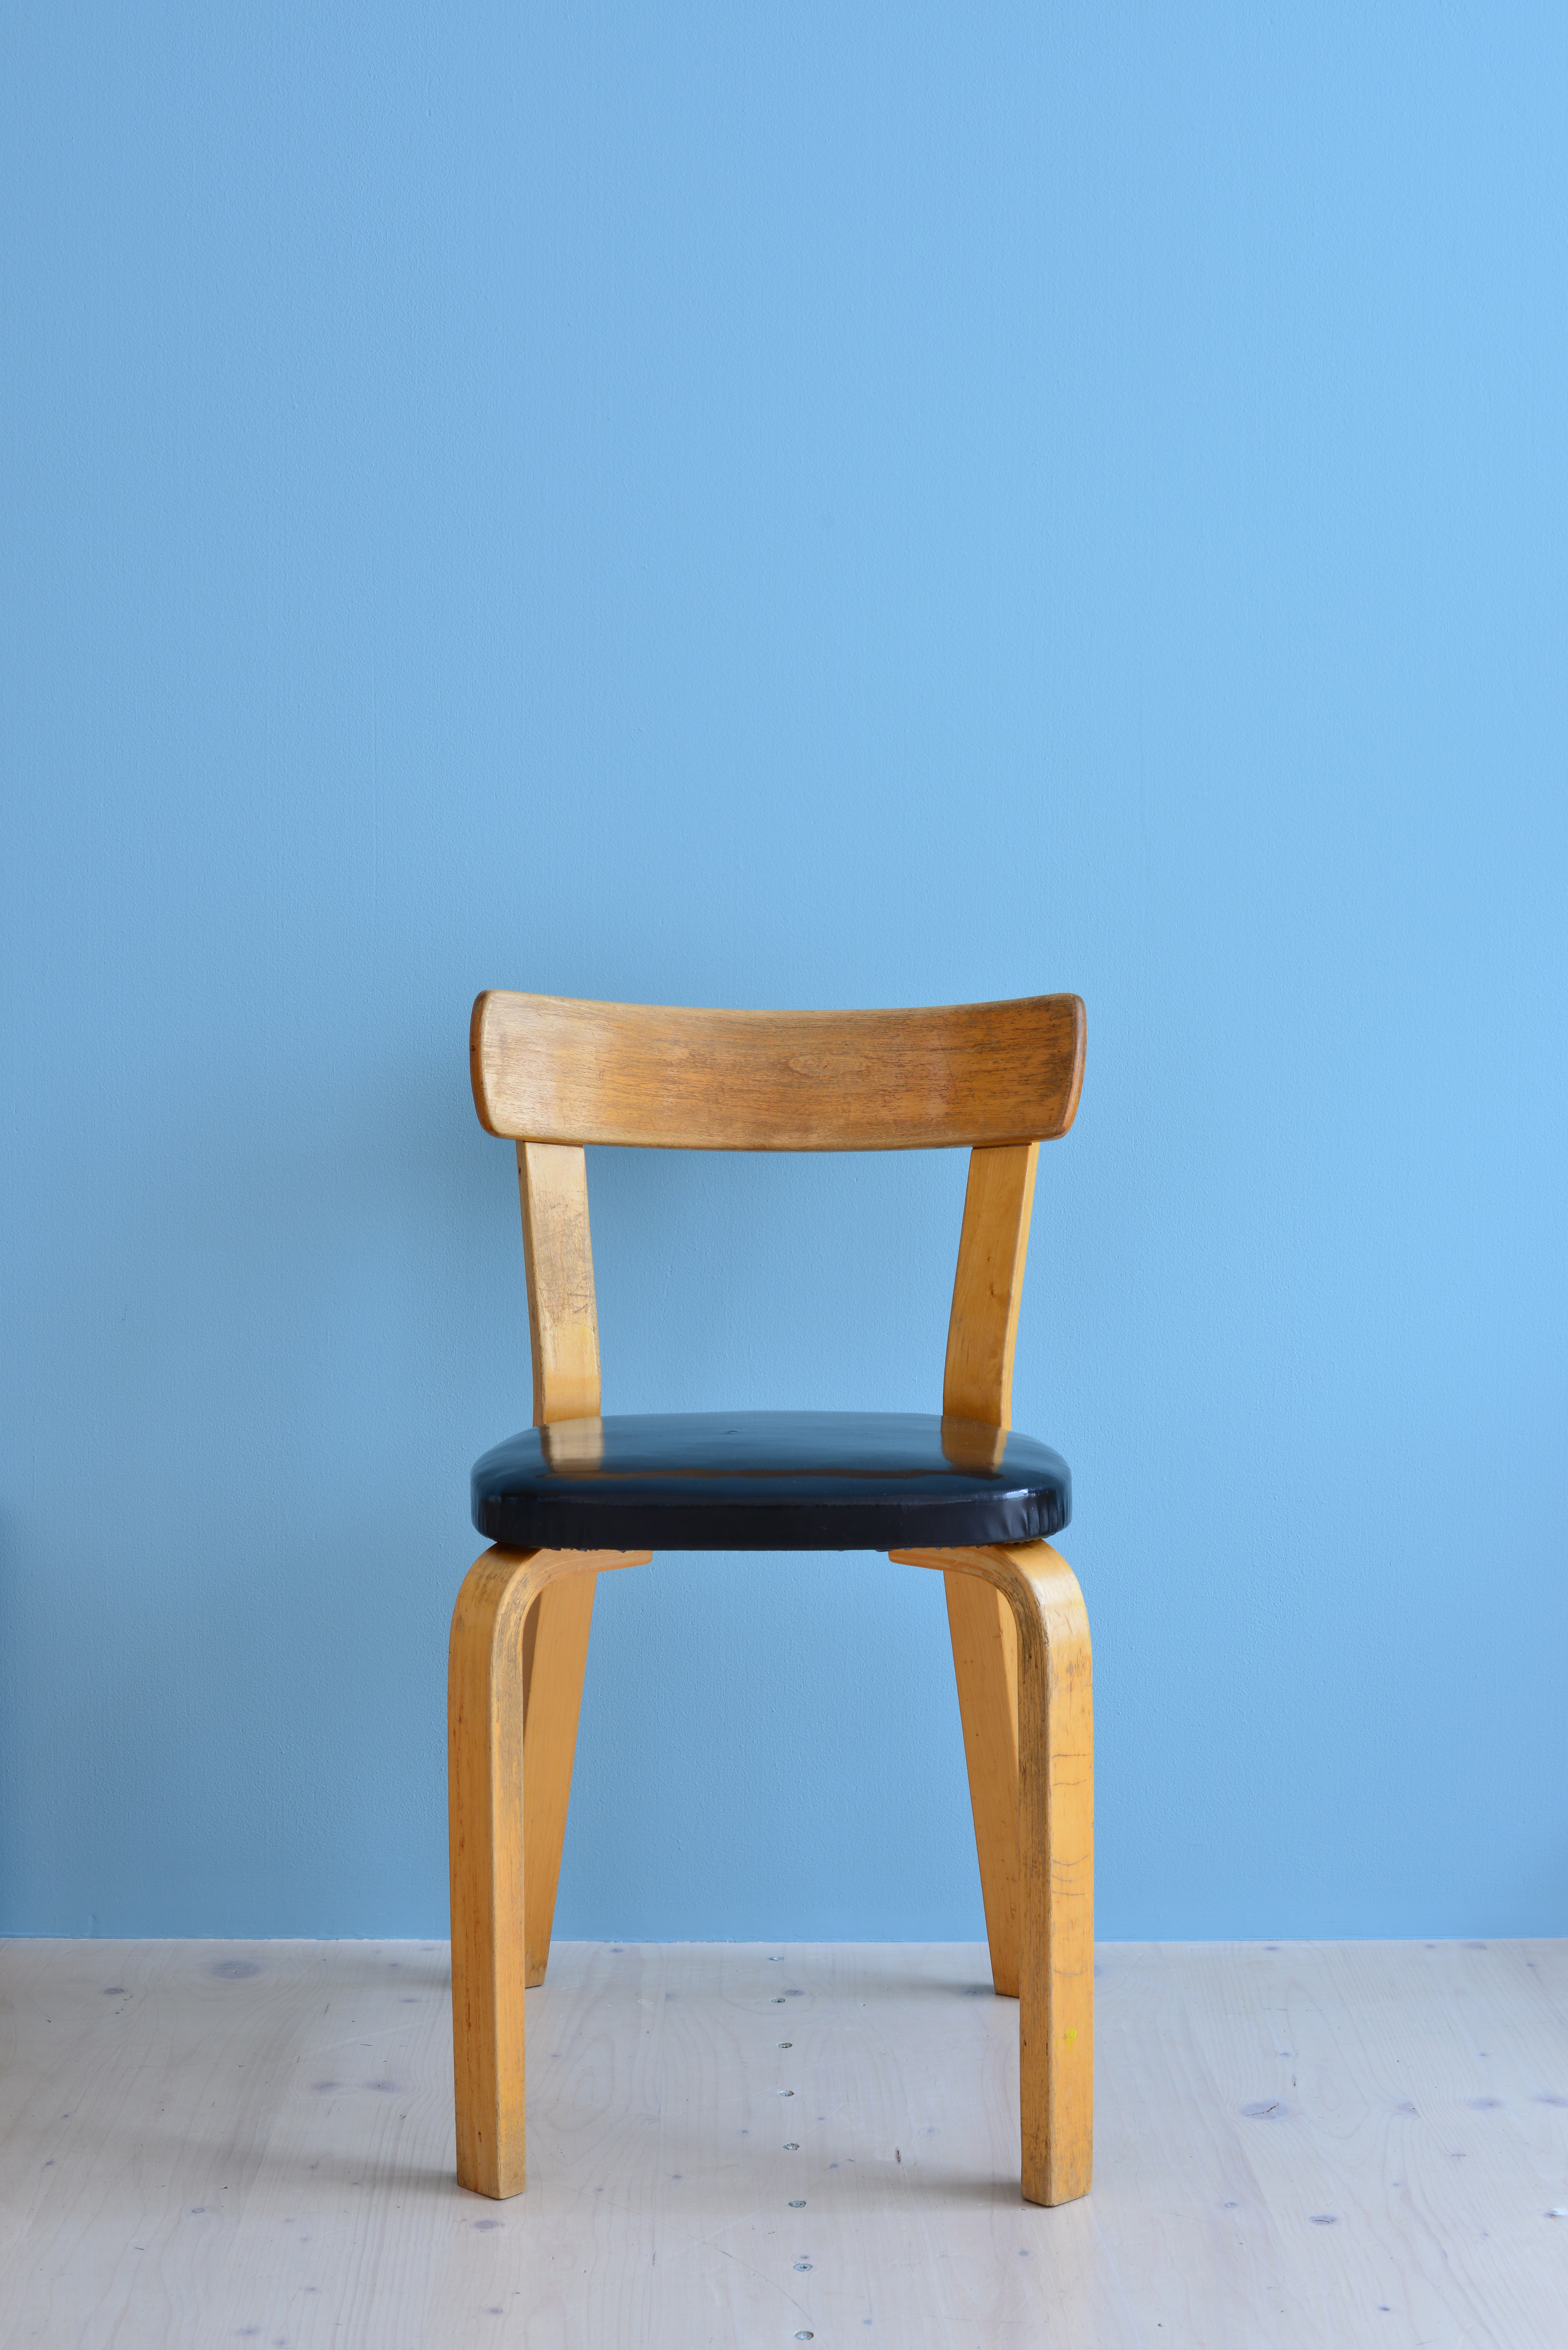 Alvar Aalto Model No 69 Chair available at heyday möbel Grubenstrasse 19 Zürich